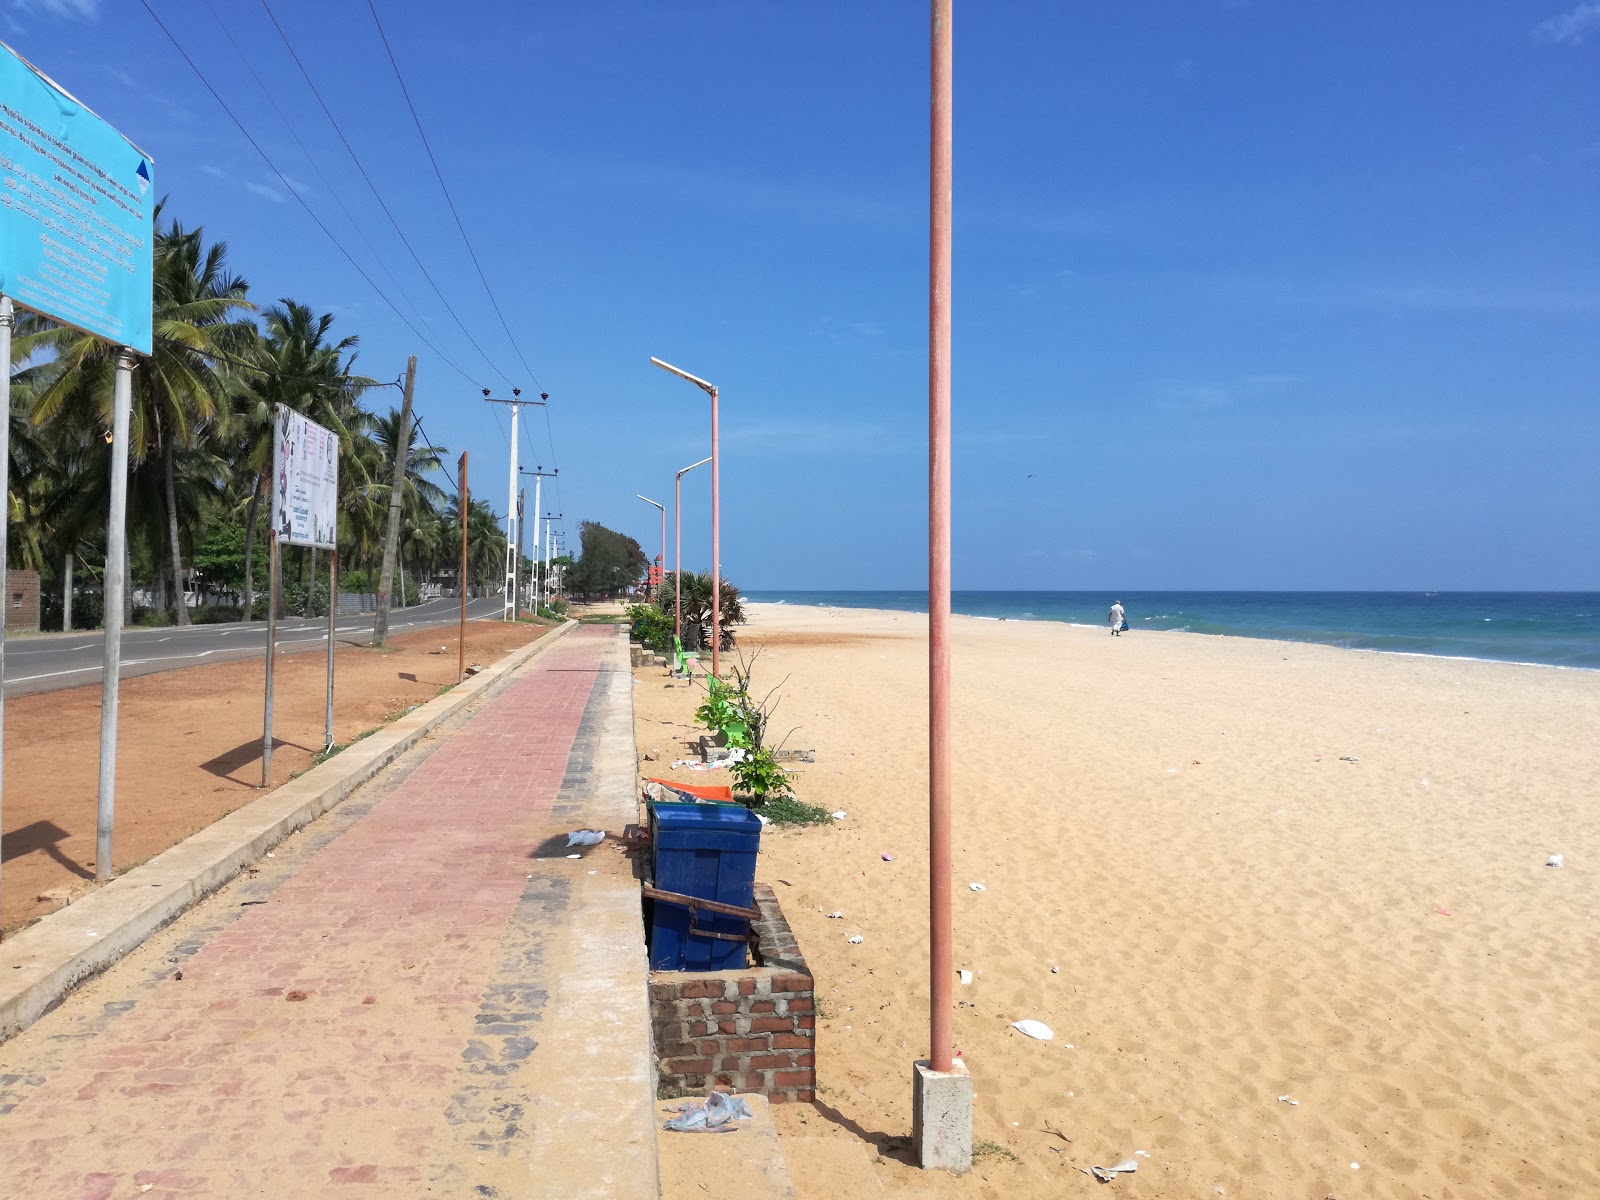 Foto de Kattankudy Beach - lugar popular entre los conocedores del relax